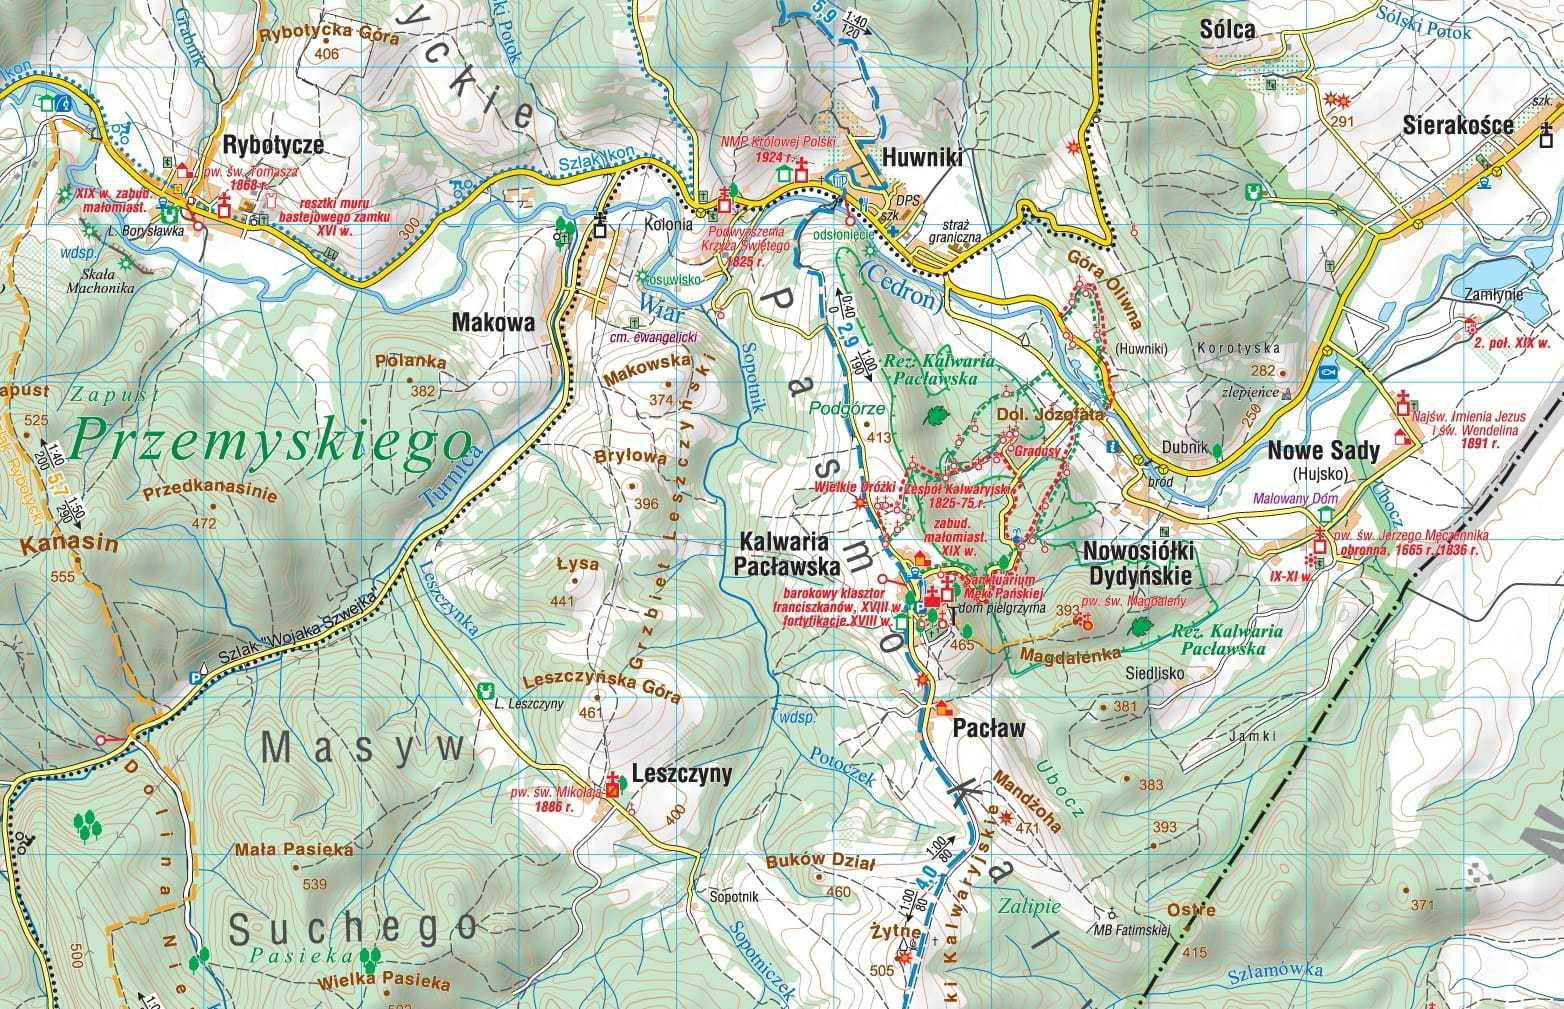 MAPA pogórze przemyskie DYNOWSKIE Laminowana COMPASS